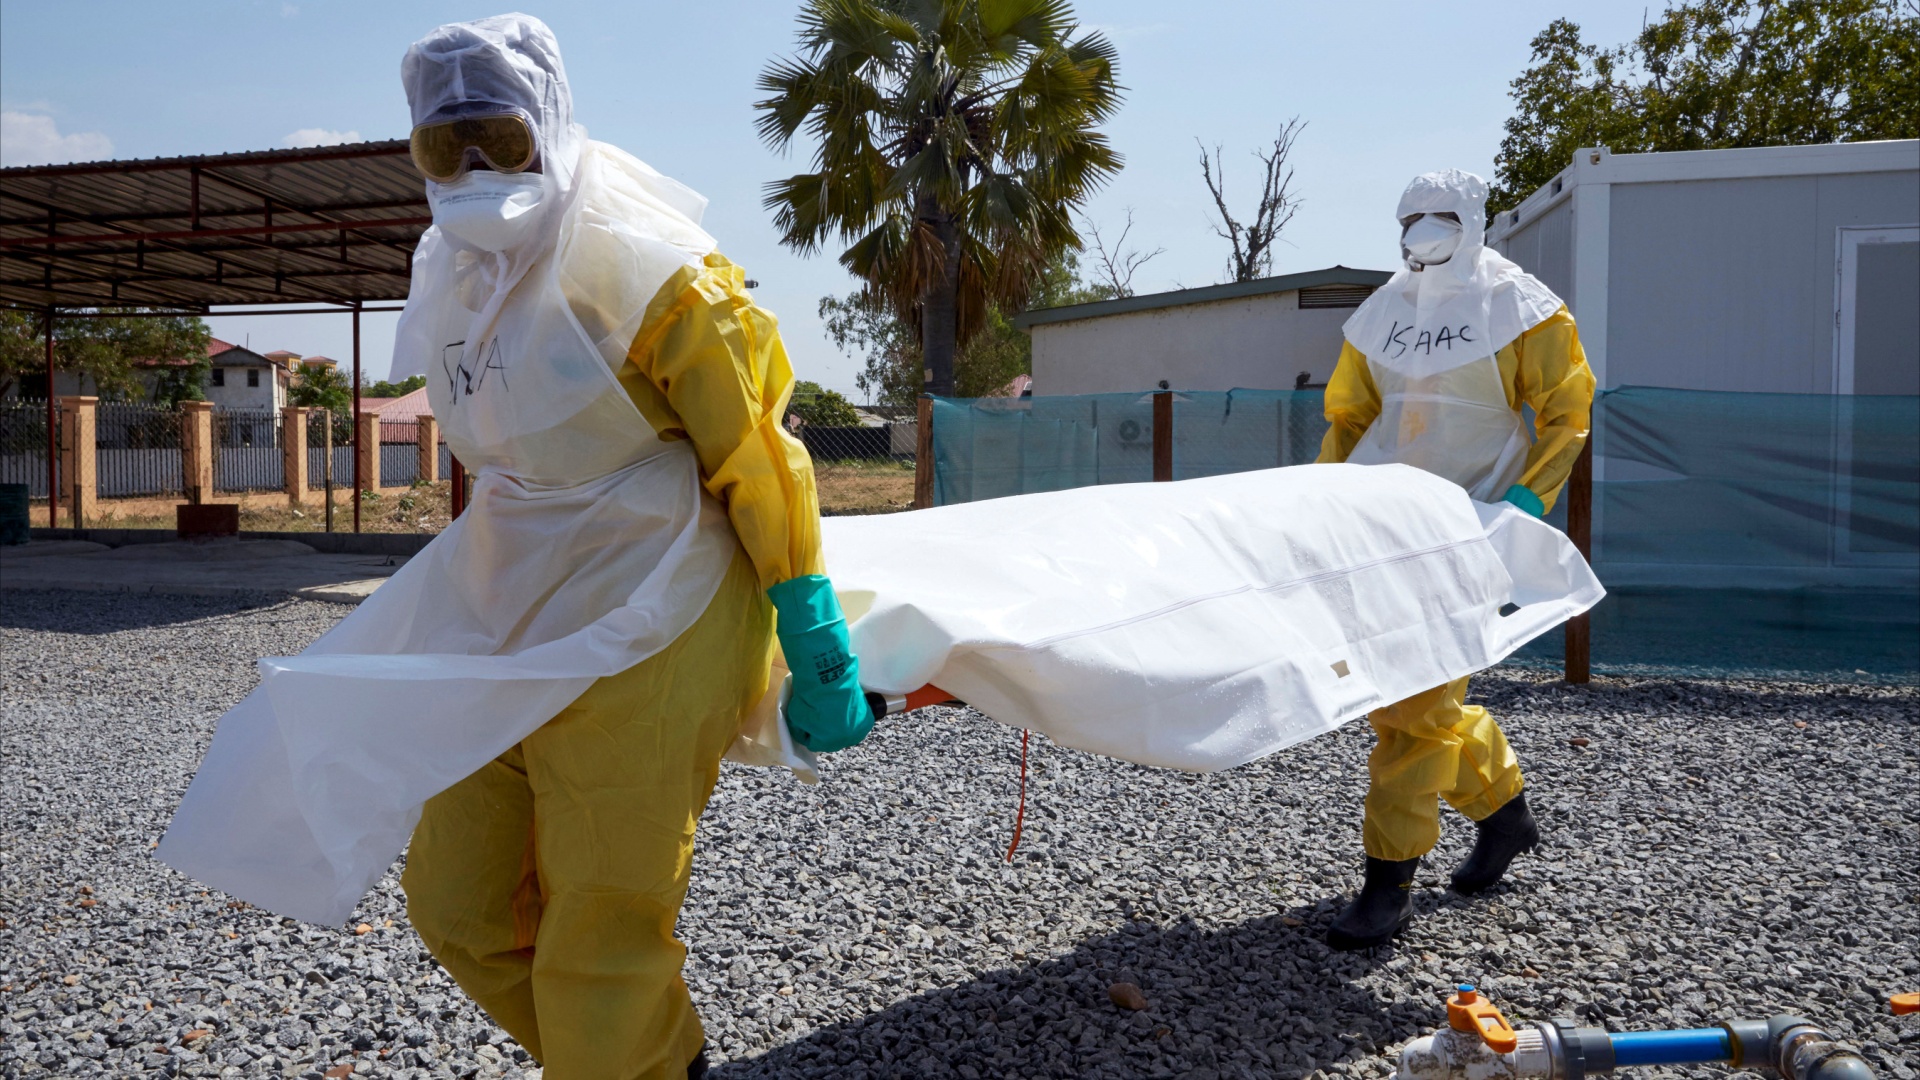 Вторая смерть от Эболы зафиксирована в ДР Конго